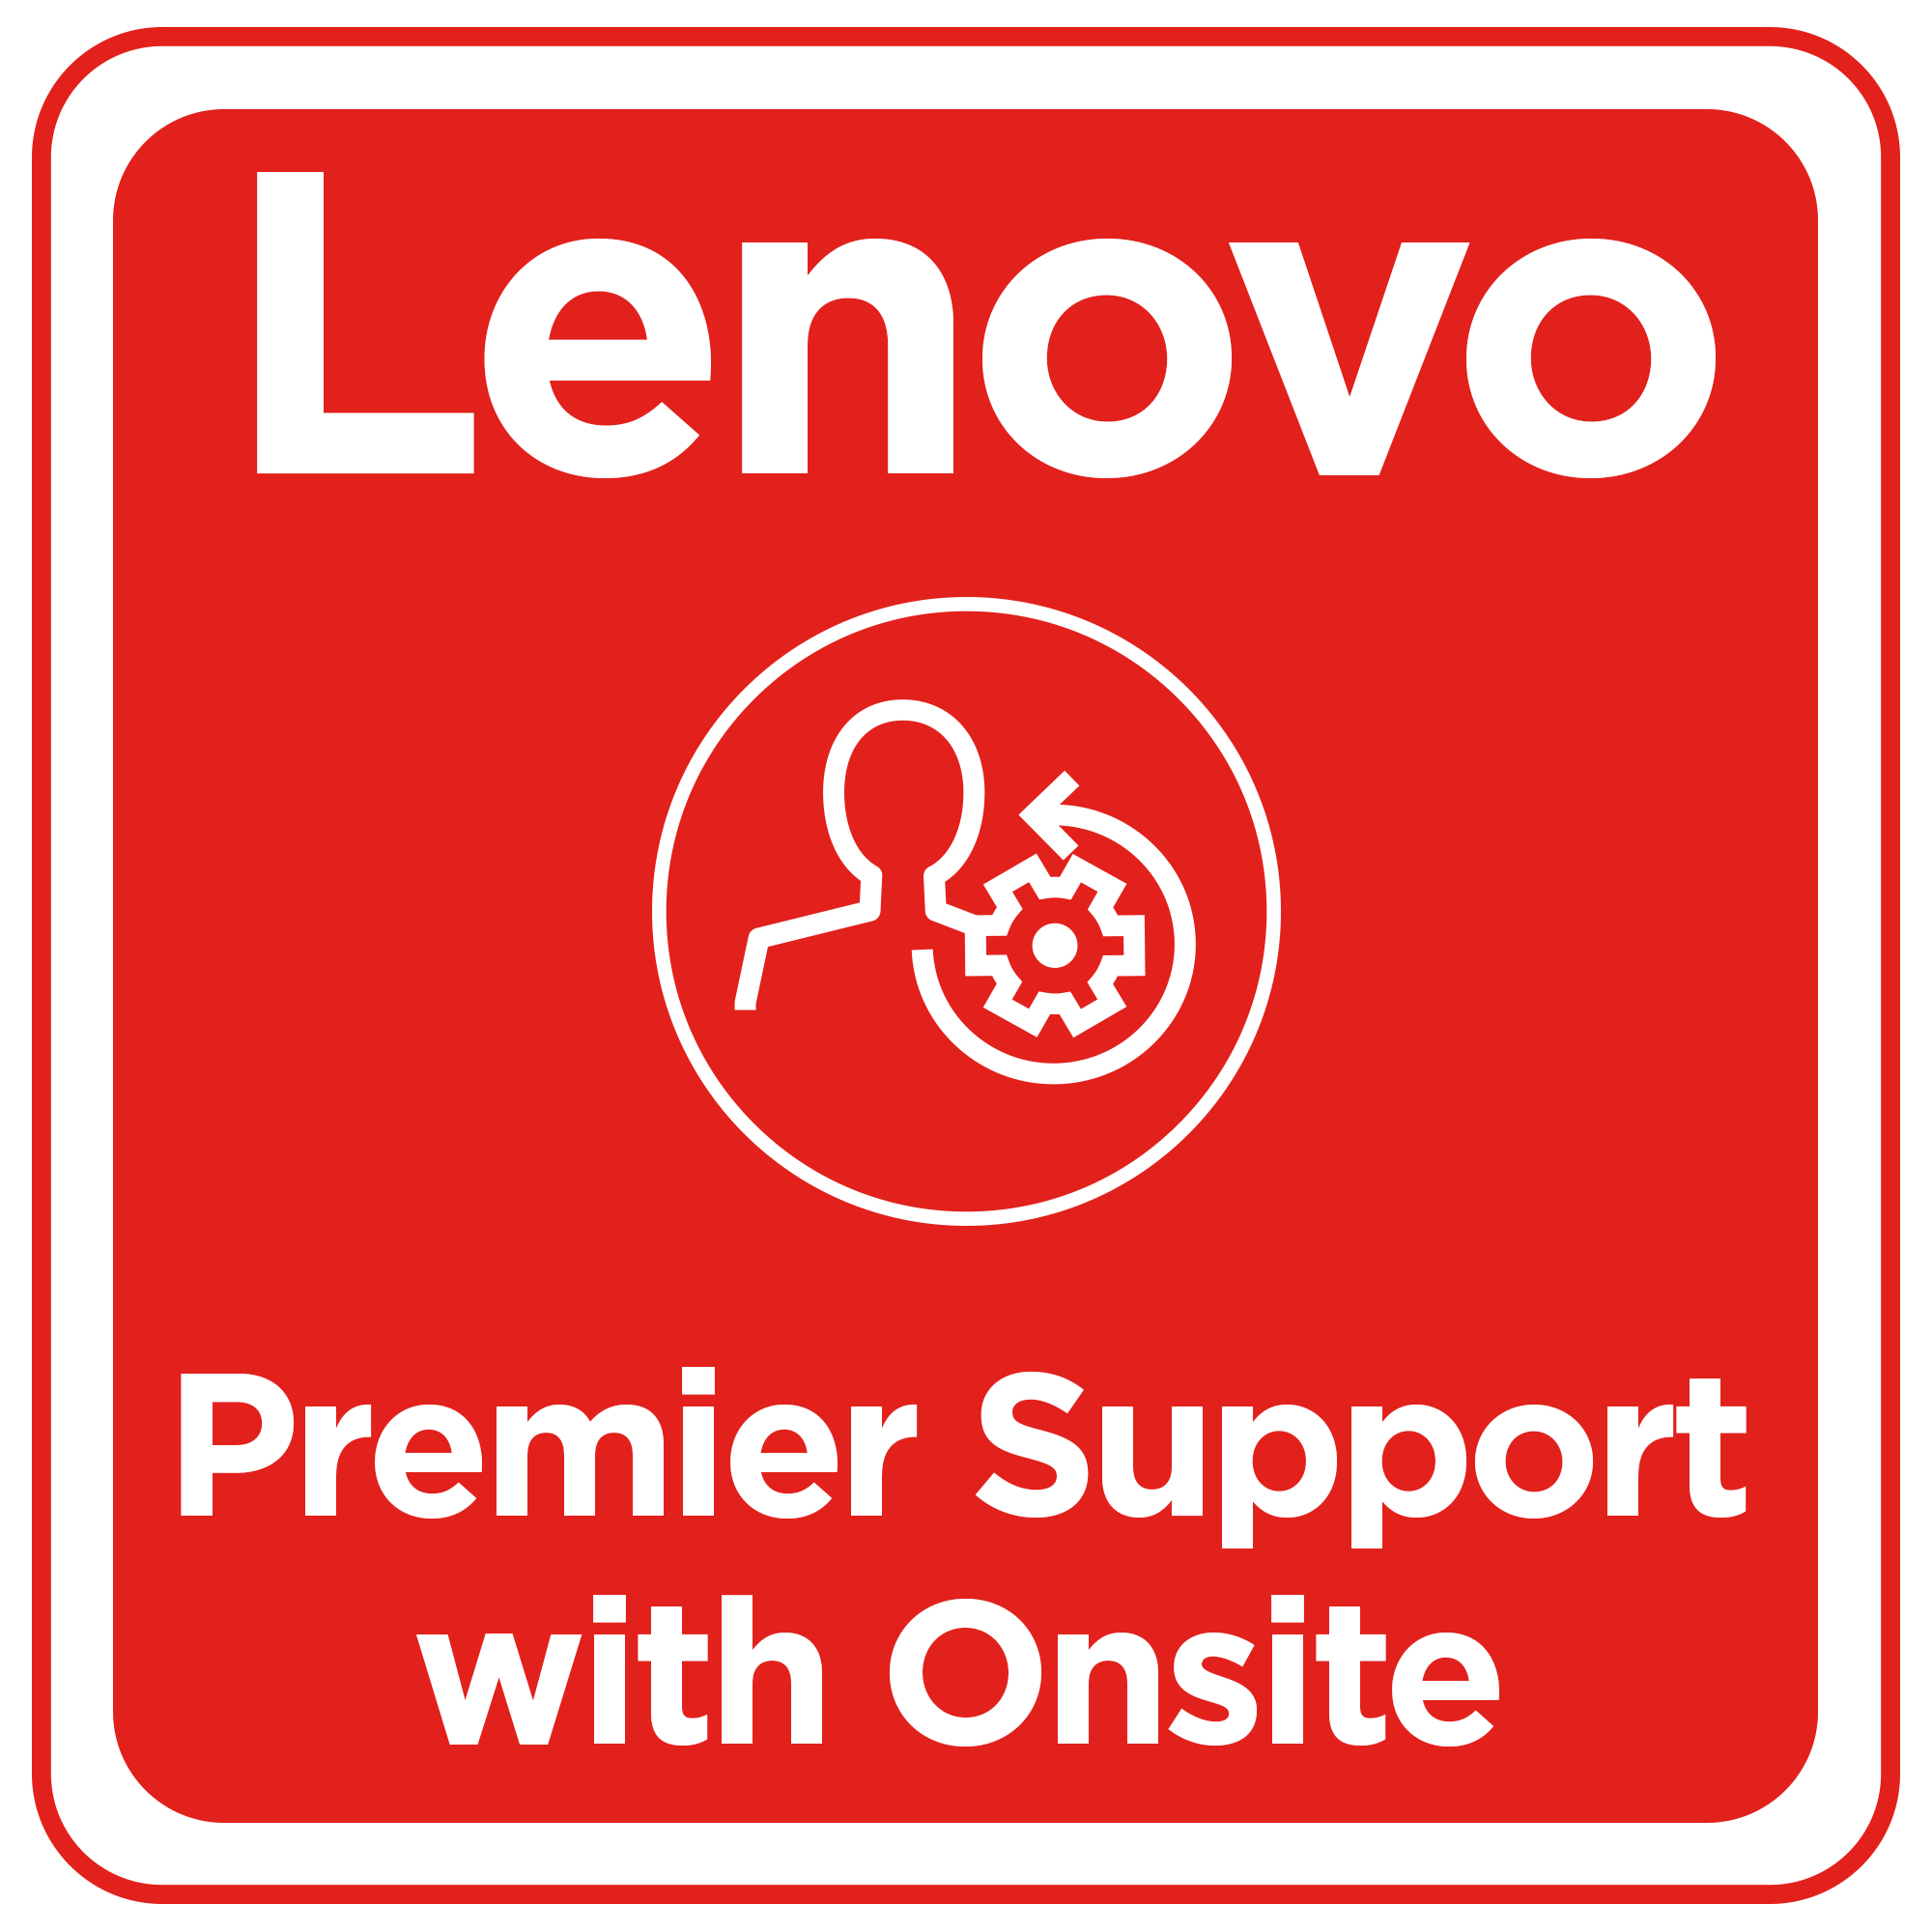 Bild von Lenovo 1 Year Premier Support With Onsite - 1 Jahr(e)